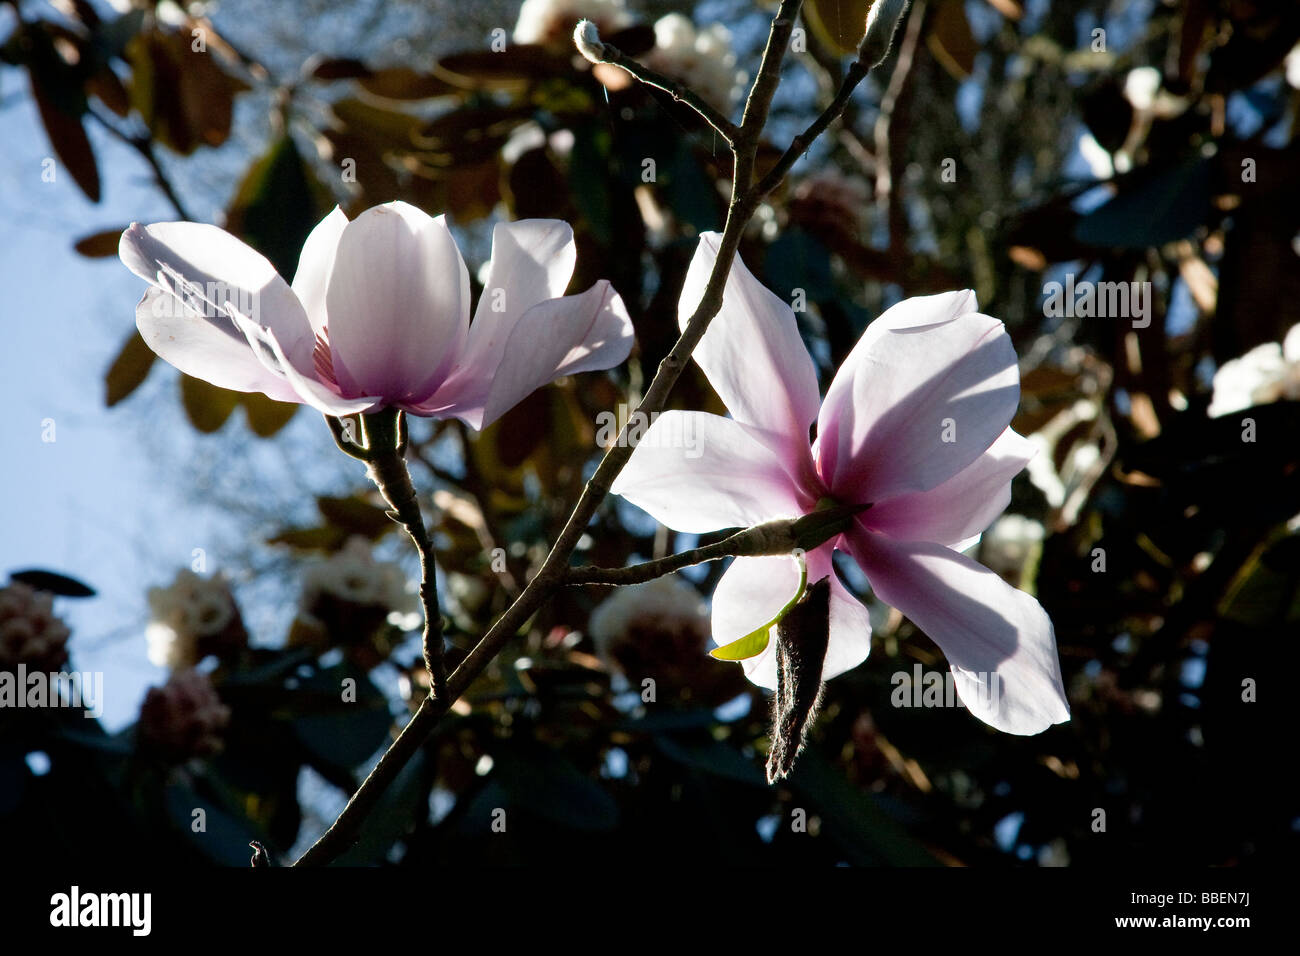 Magnolia, Caerhays Castle garden Stock Photo